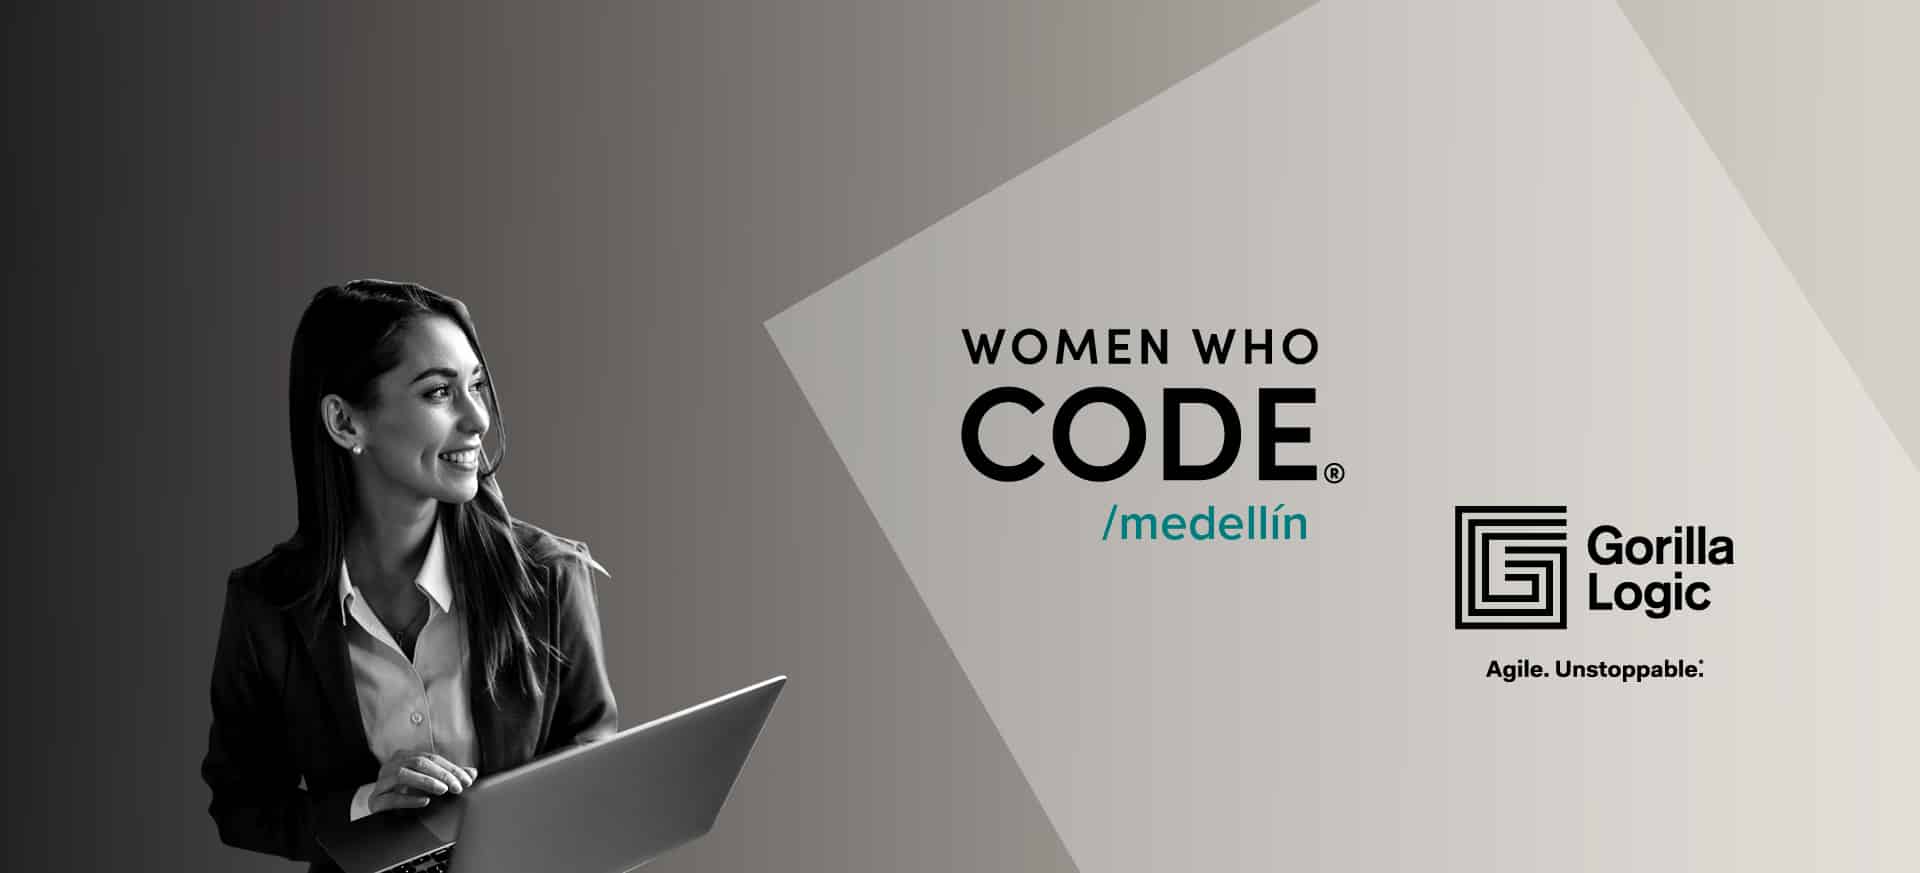 Gorilla Logic to Sponsor 2023 ‘Women Who Code Medellín’ Software Development Program